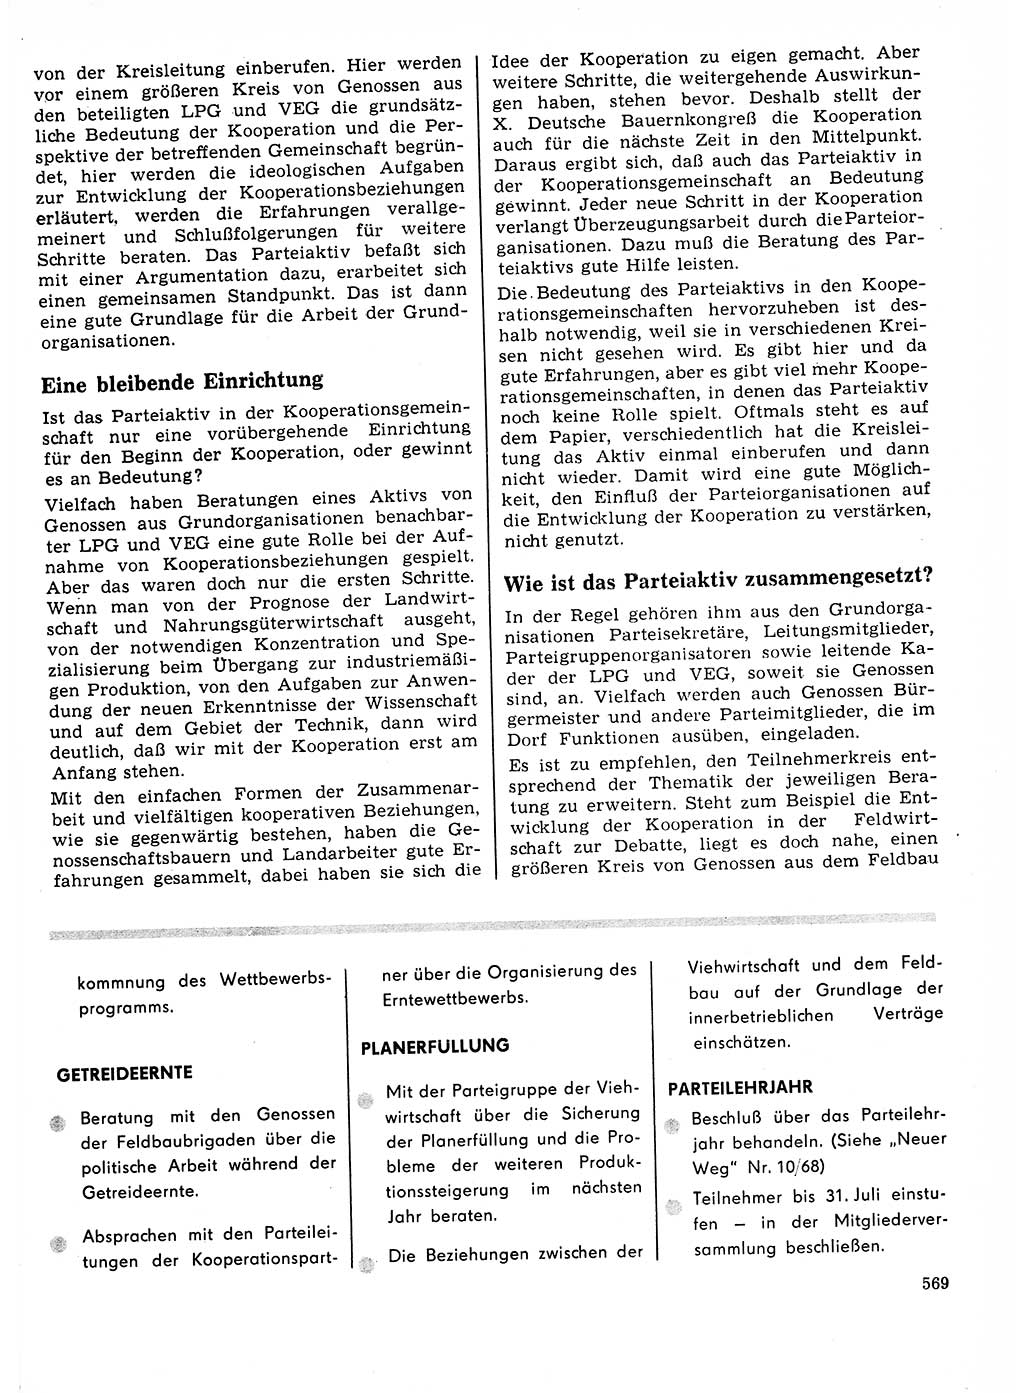 Neuer Weg (NW), Organ des Zentralkomitees (ZK) der SED (Sozialistische Einheitspartei Deutschlands) für Fragen des Parteilebens, 23. Jahrgang [Deutsche Demokratische Republik (DDR)] 1968, Seite 569 (NW ZK SED DDR 1968, S. 569)